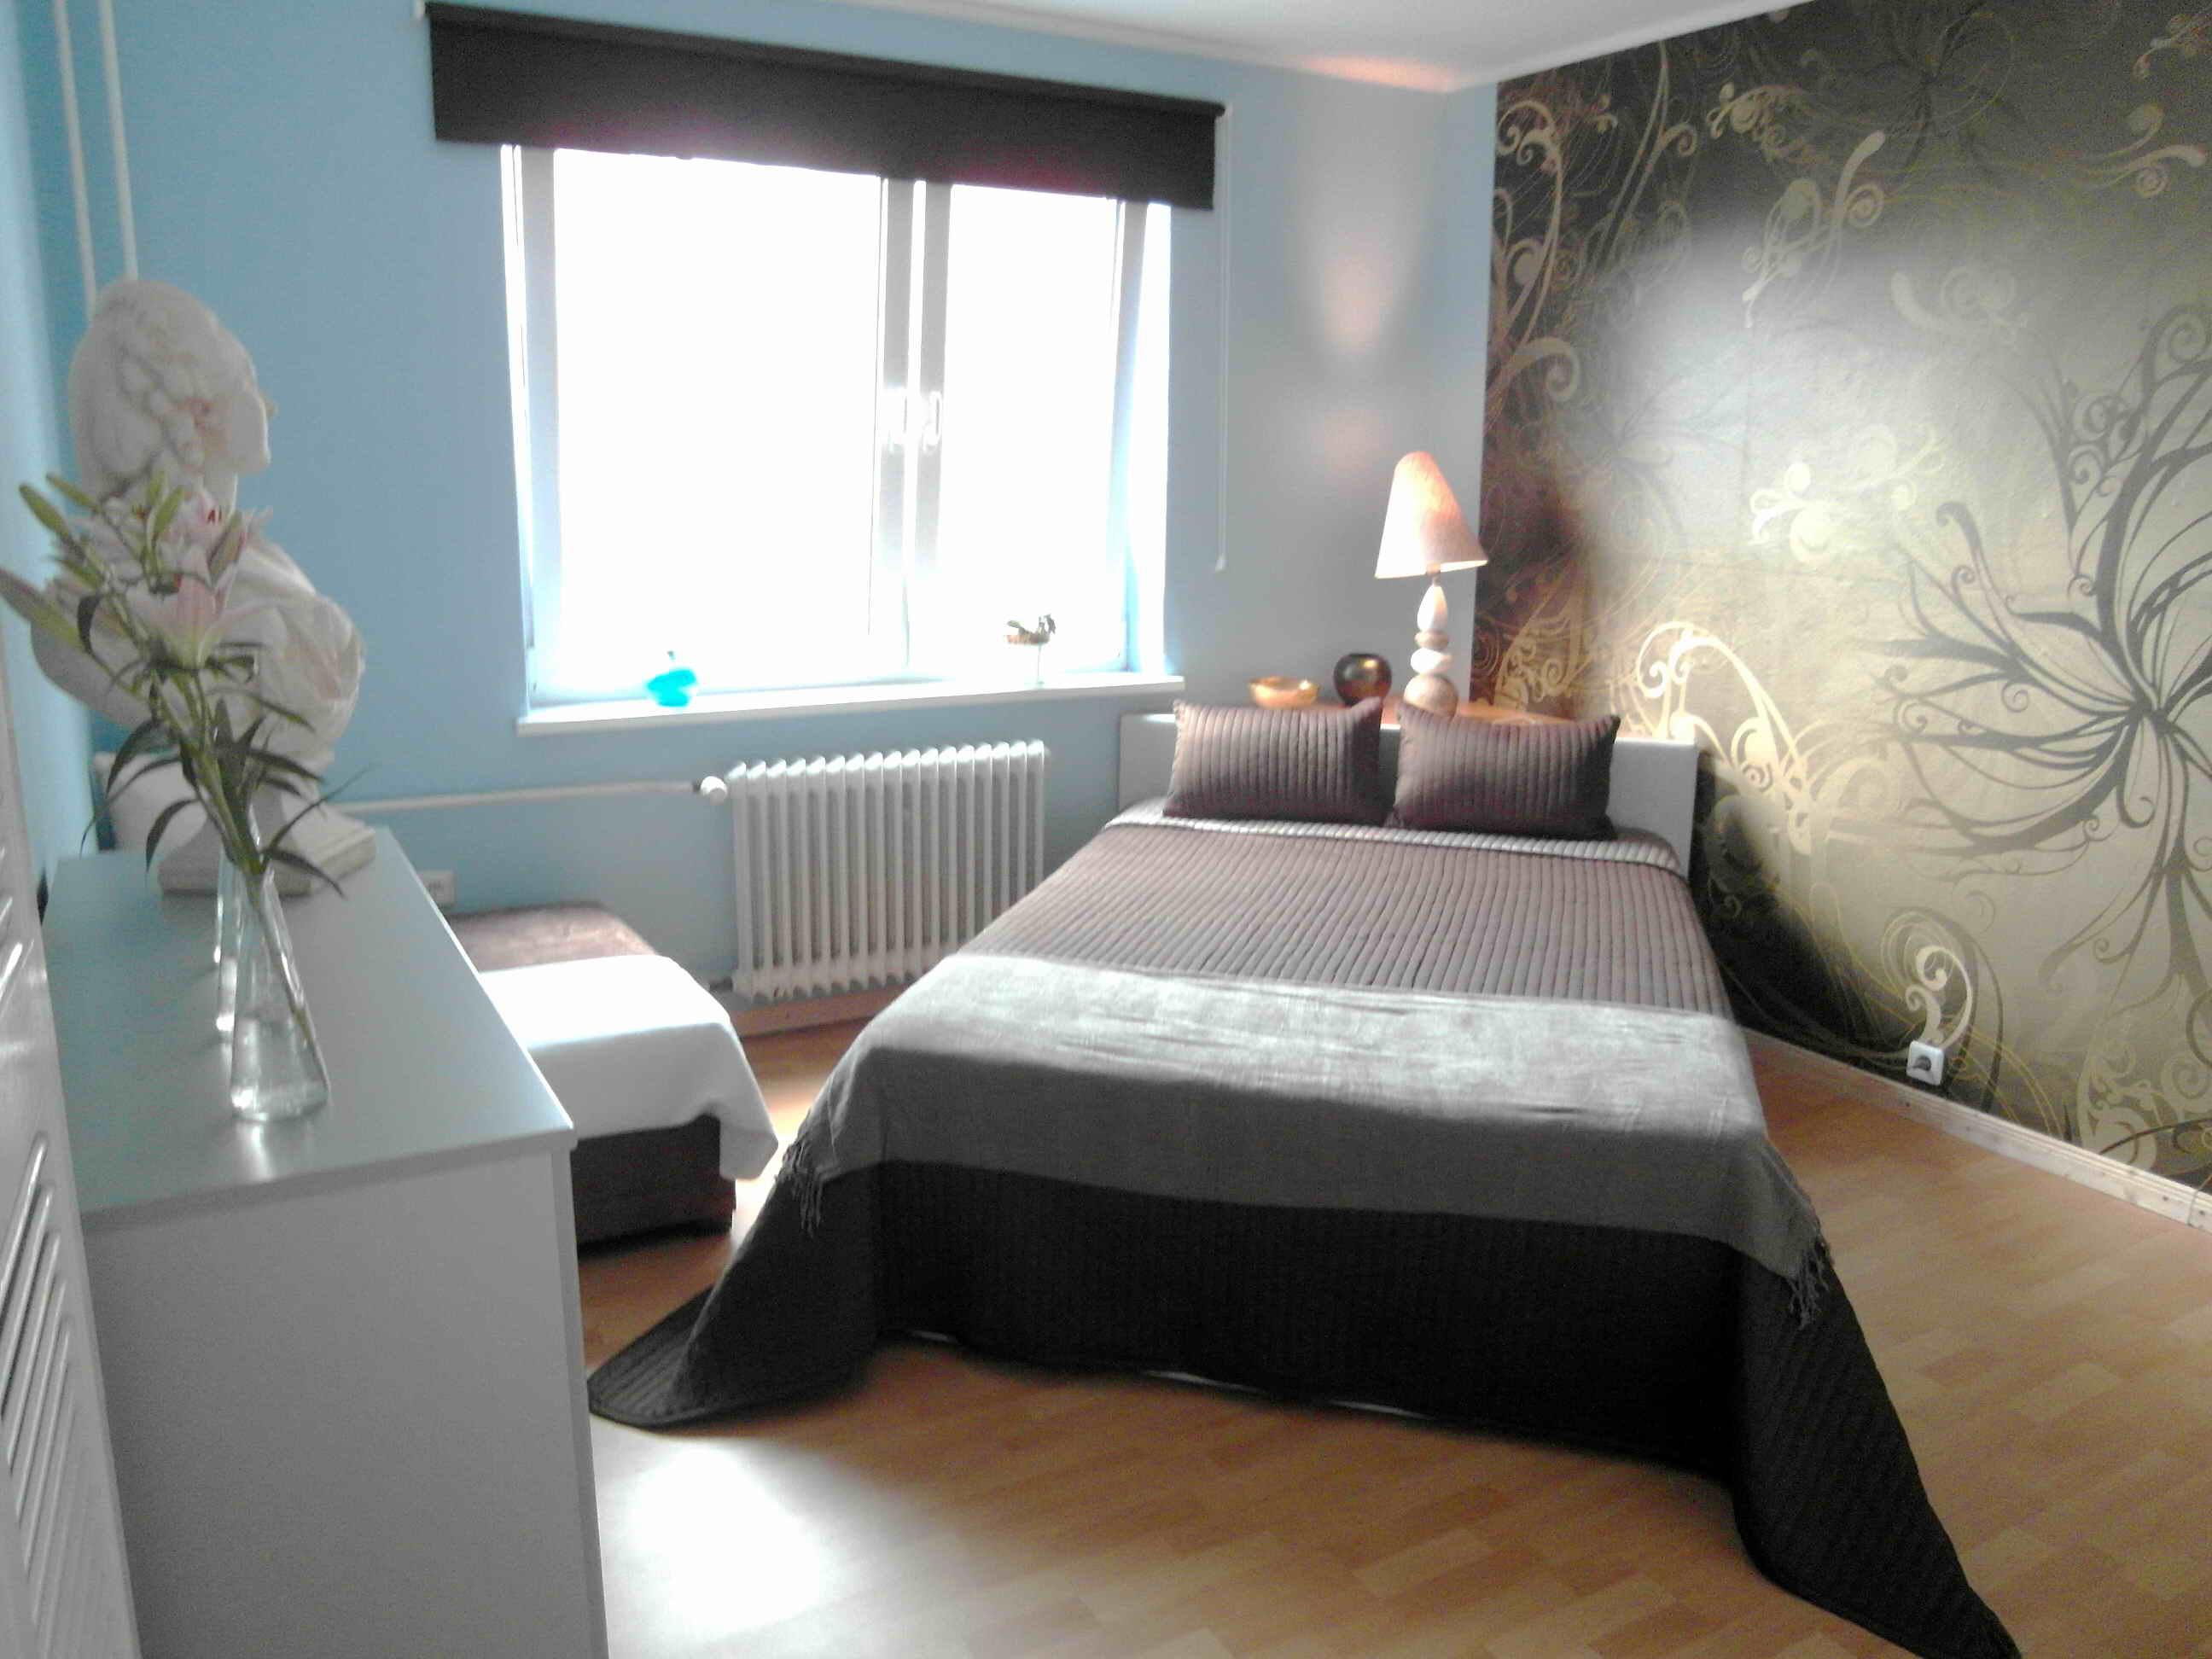 Schlafzimmer in ruhigen Farben #bett #tapetenmuster #blauewandfarbe #grüntapete ©artenstein